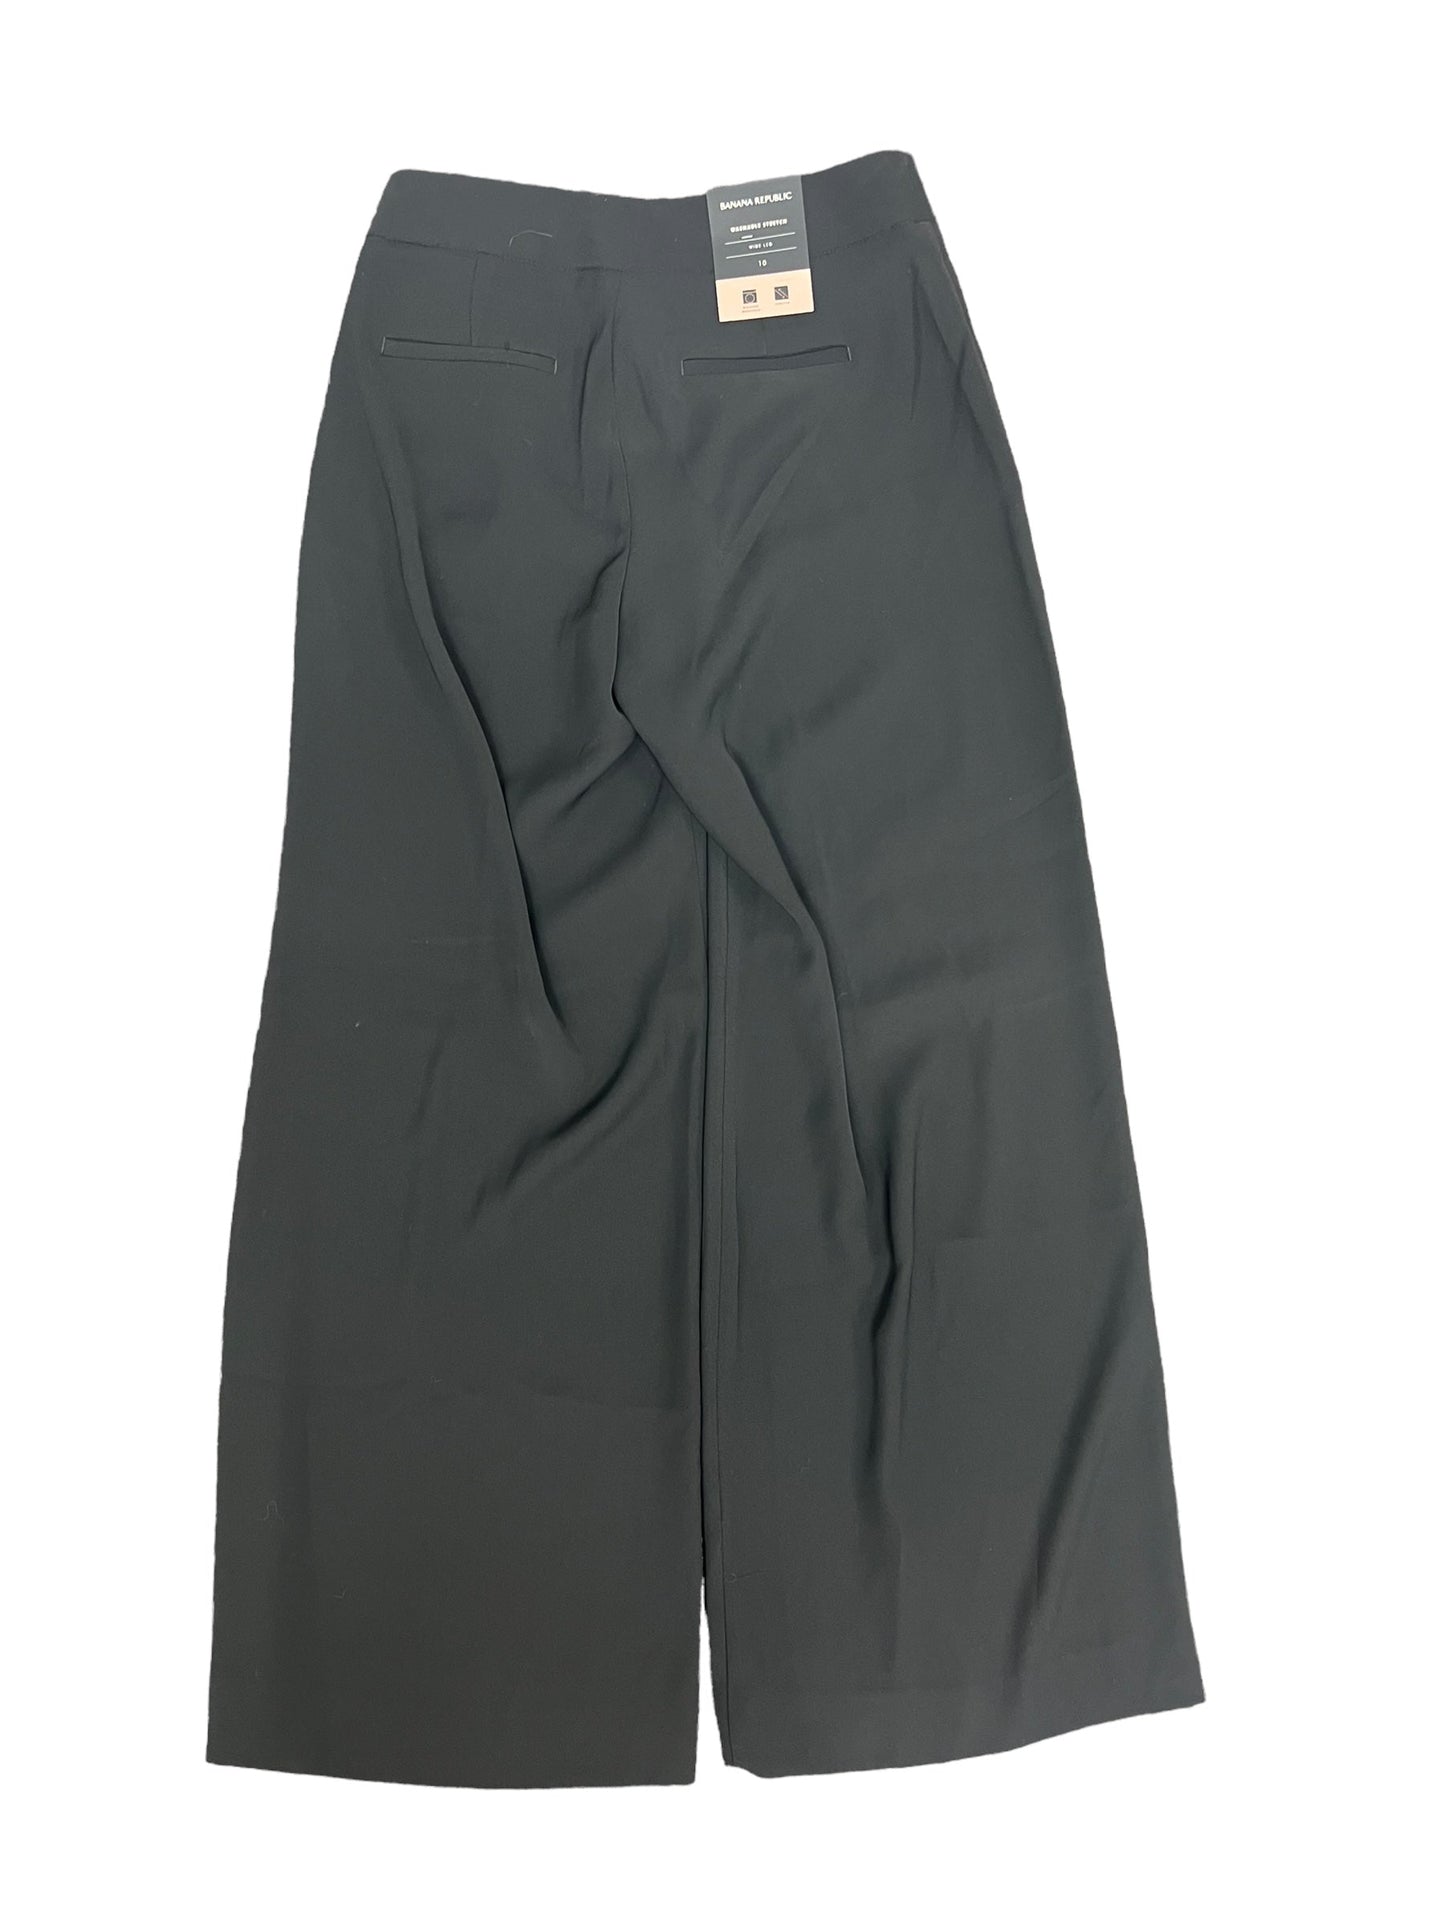 Black Pants Dress Banana Republic, Size 10